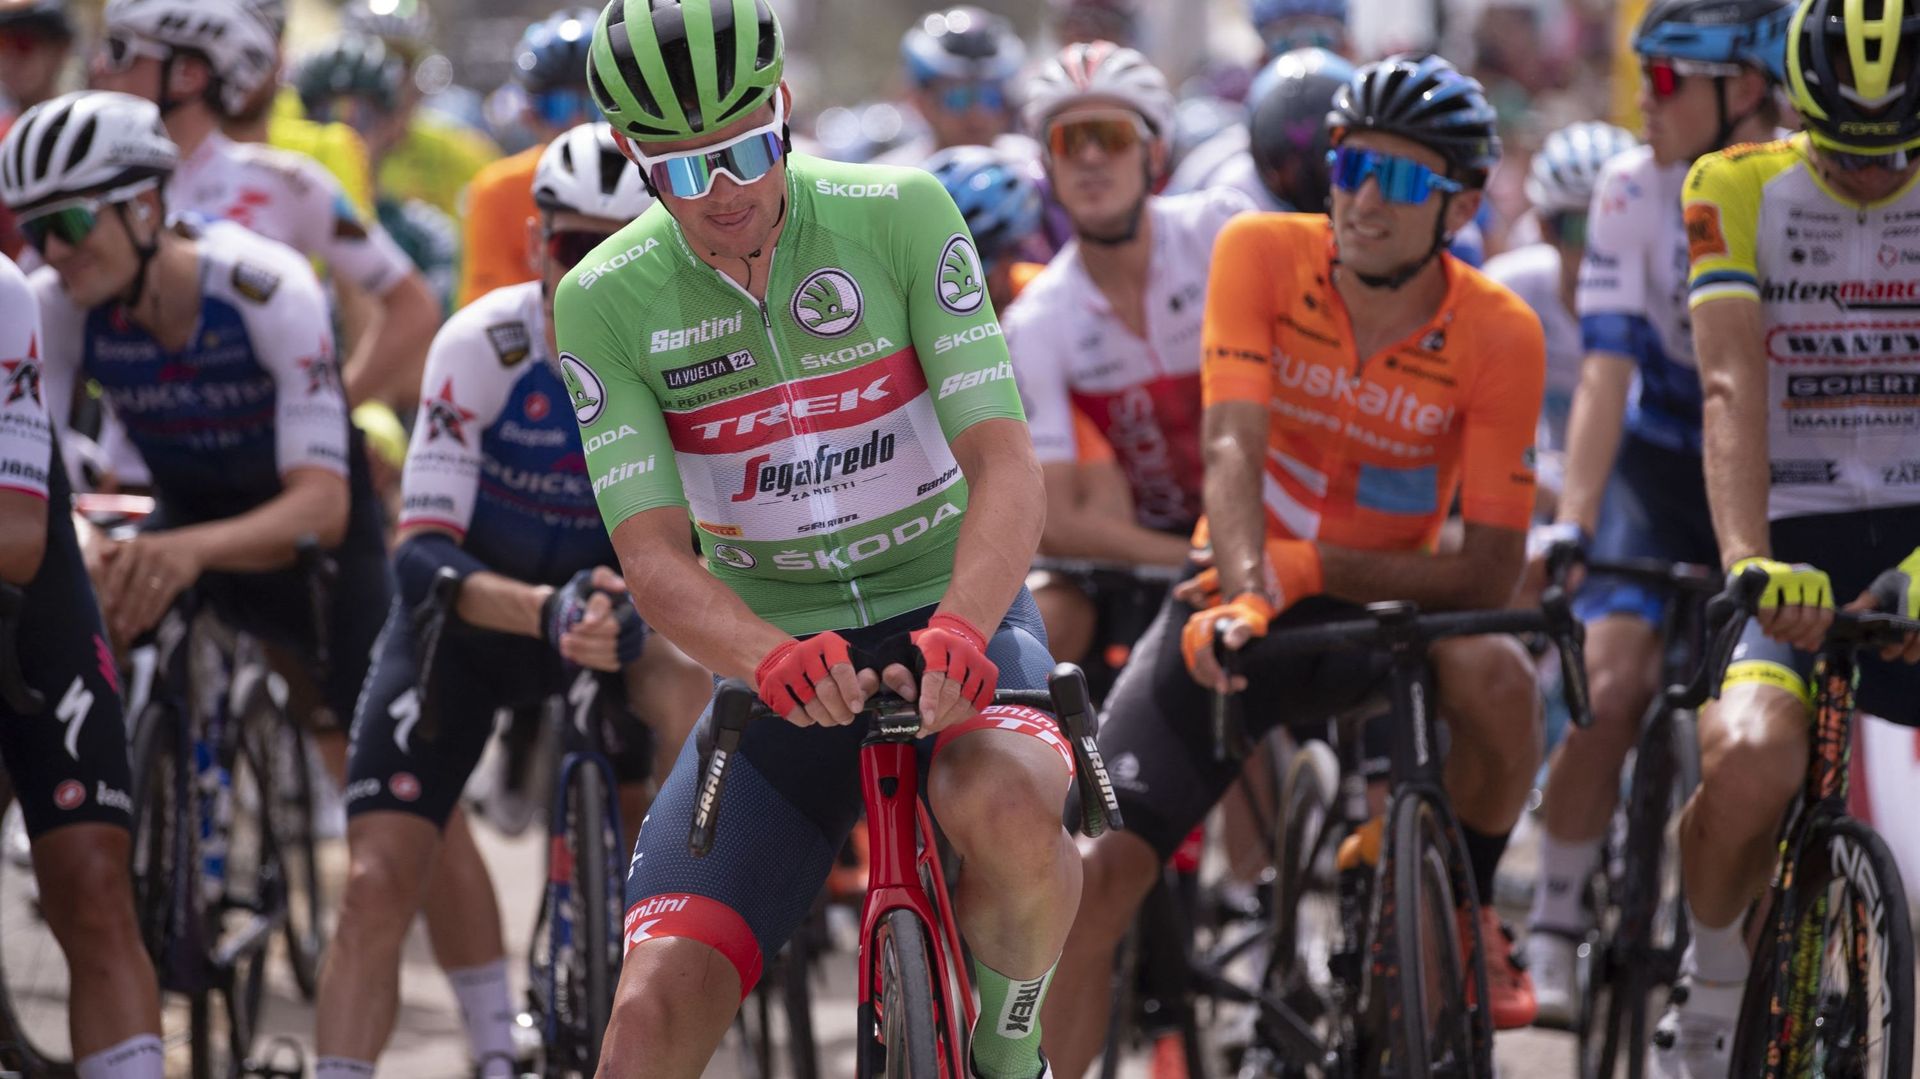 Avec cette victoire lors de la 13e étape de la Vuelta, Mads Pedersen a montré qu’il pourrait être un candidat sérieux pour la victoire finale au maillot vert mais aussi pour les Championnats du monde en septembre.